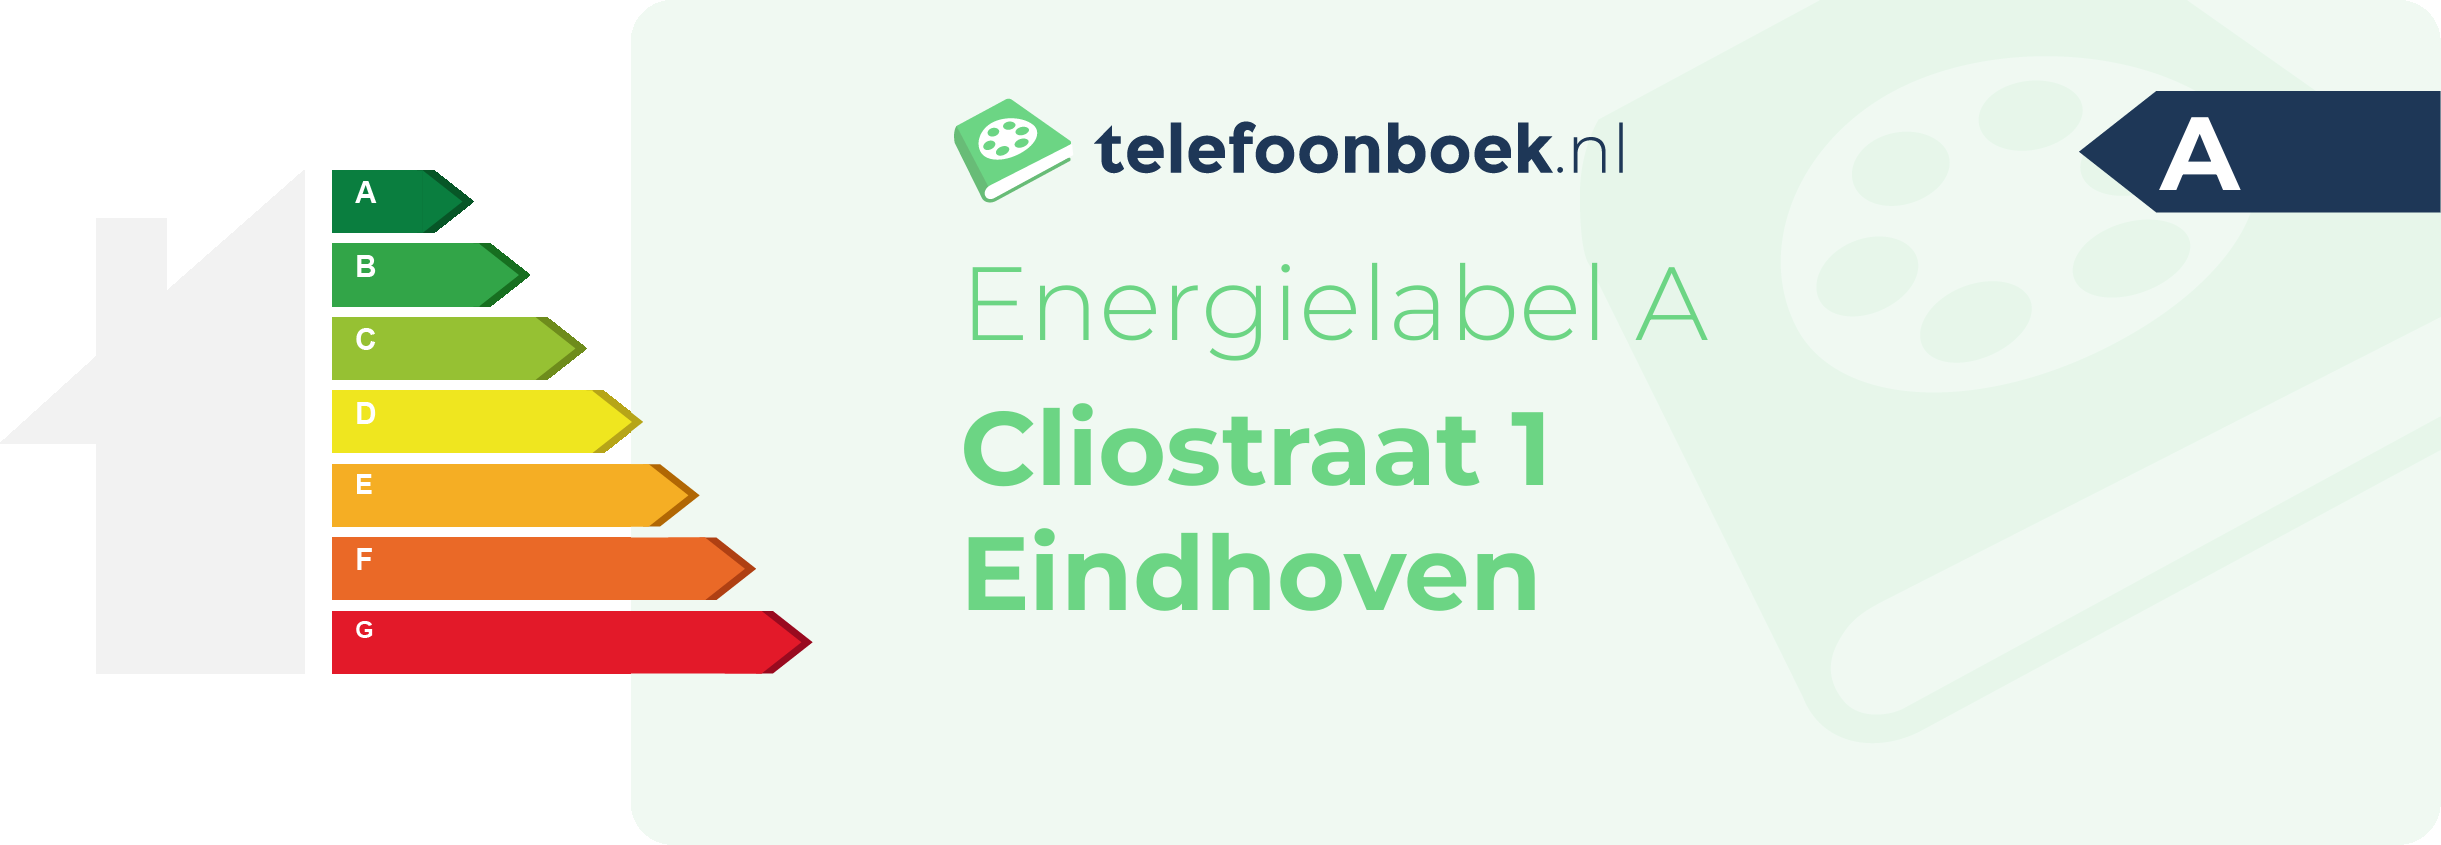 Energielabel Cliostraat 1 Eindhoven